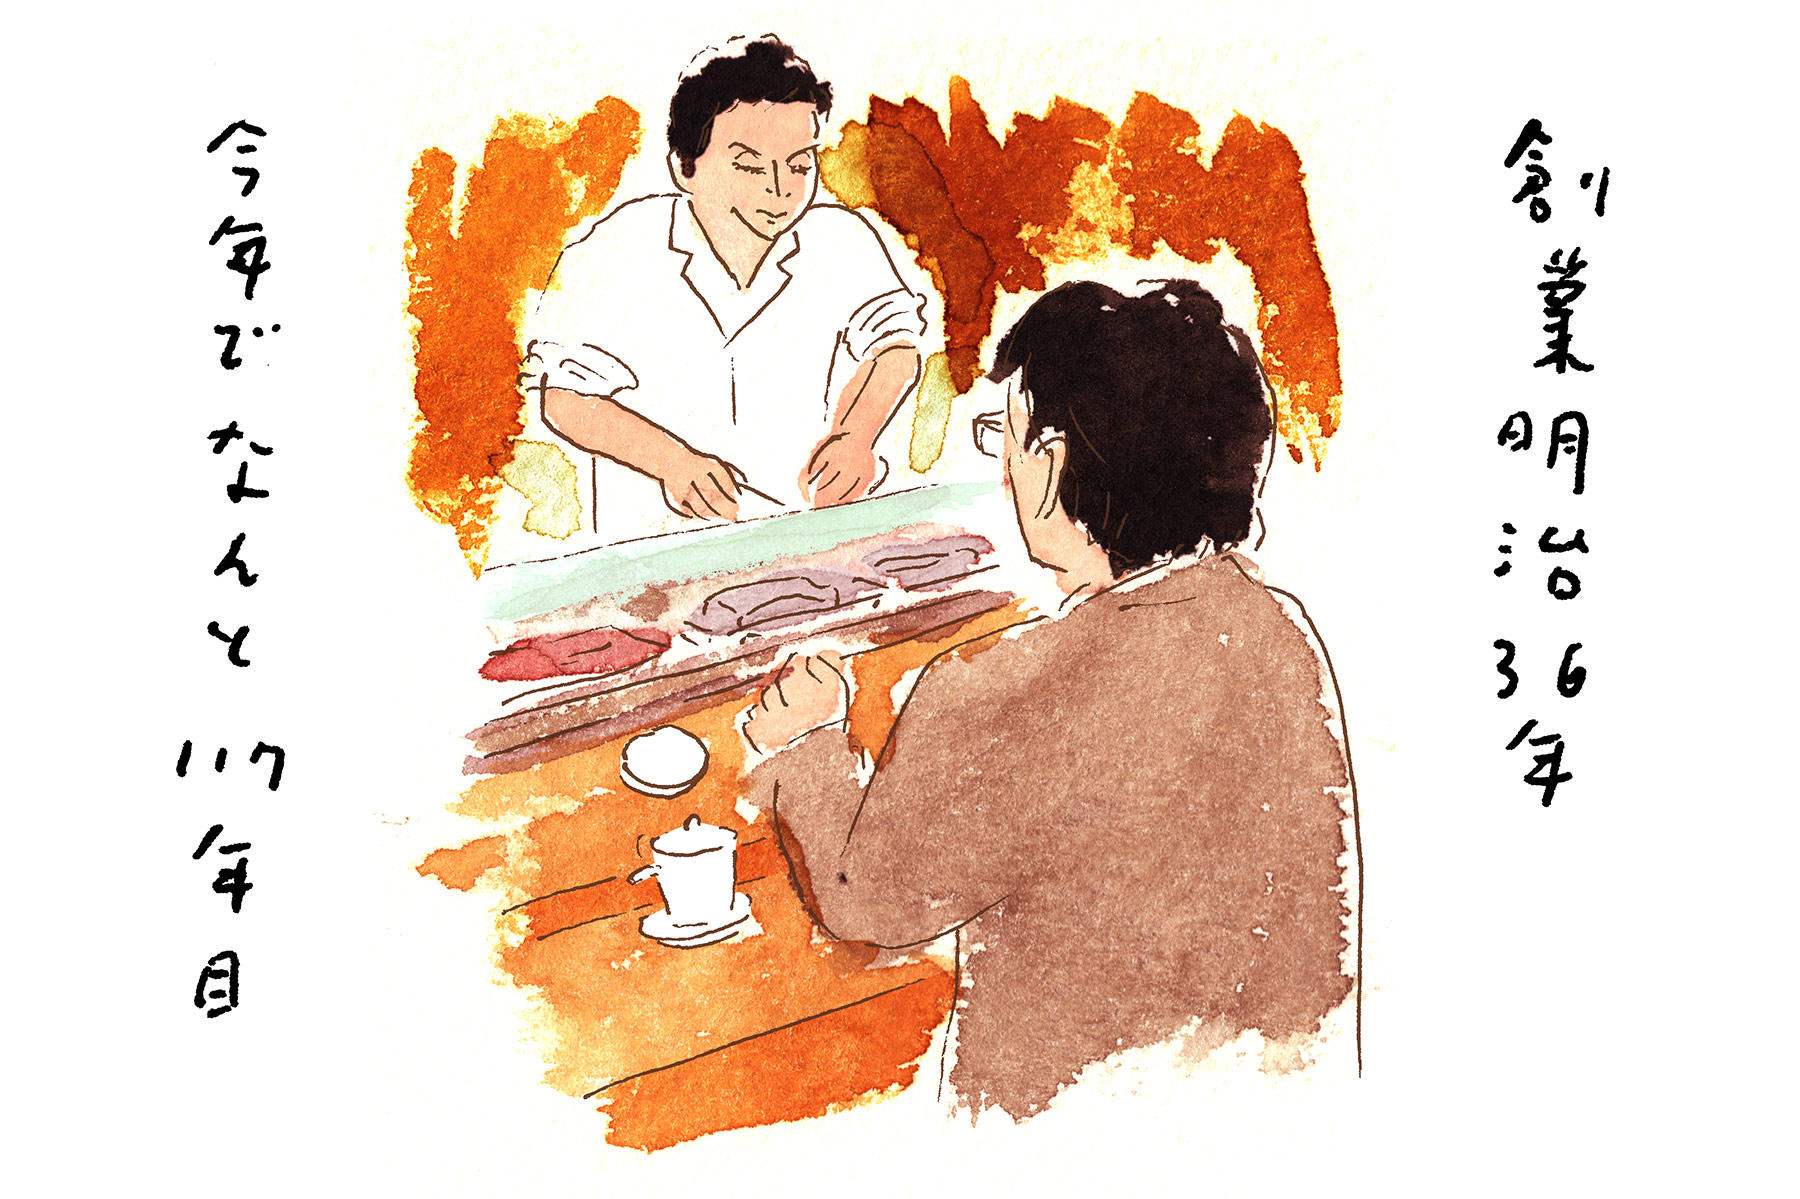 寿司屋飲みで大人の階段を昇る 東京 浅草 紀文寿司 前編 大竹聡さんの 代に教えたい 酒場案内 公式 Dancyu ダンチュウ